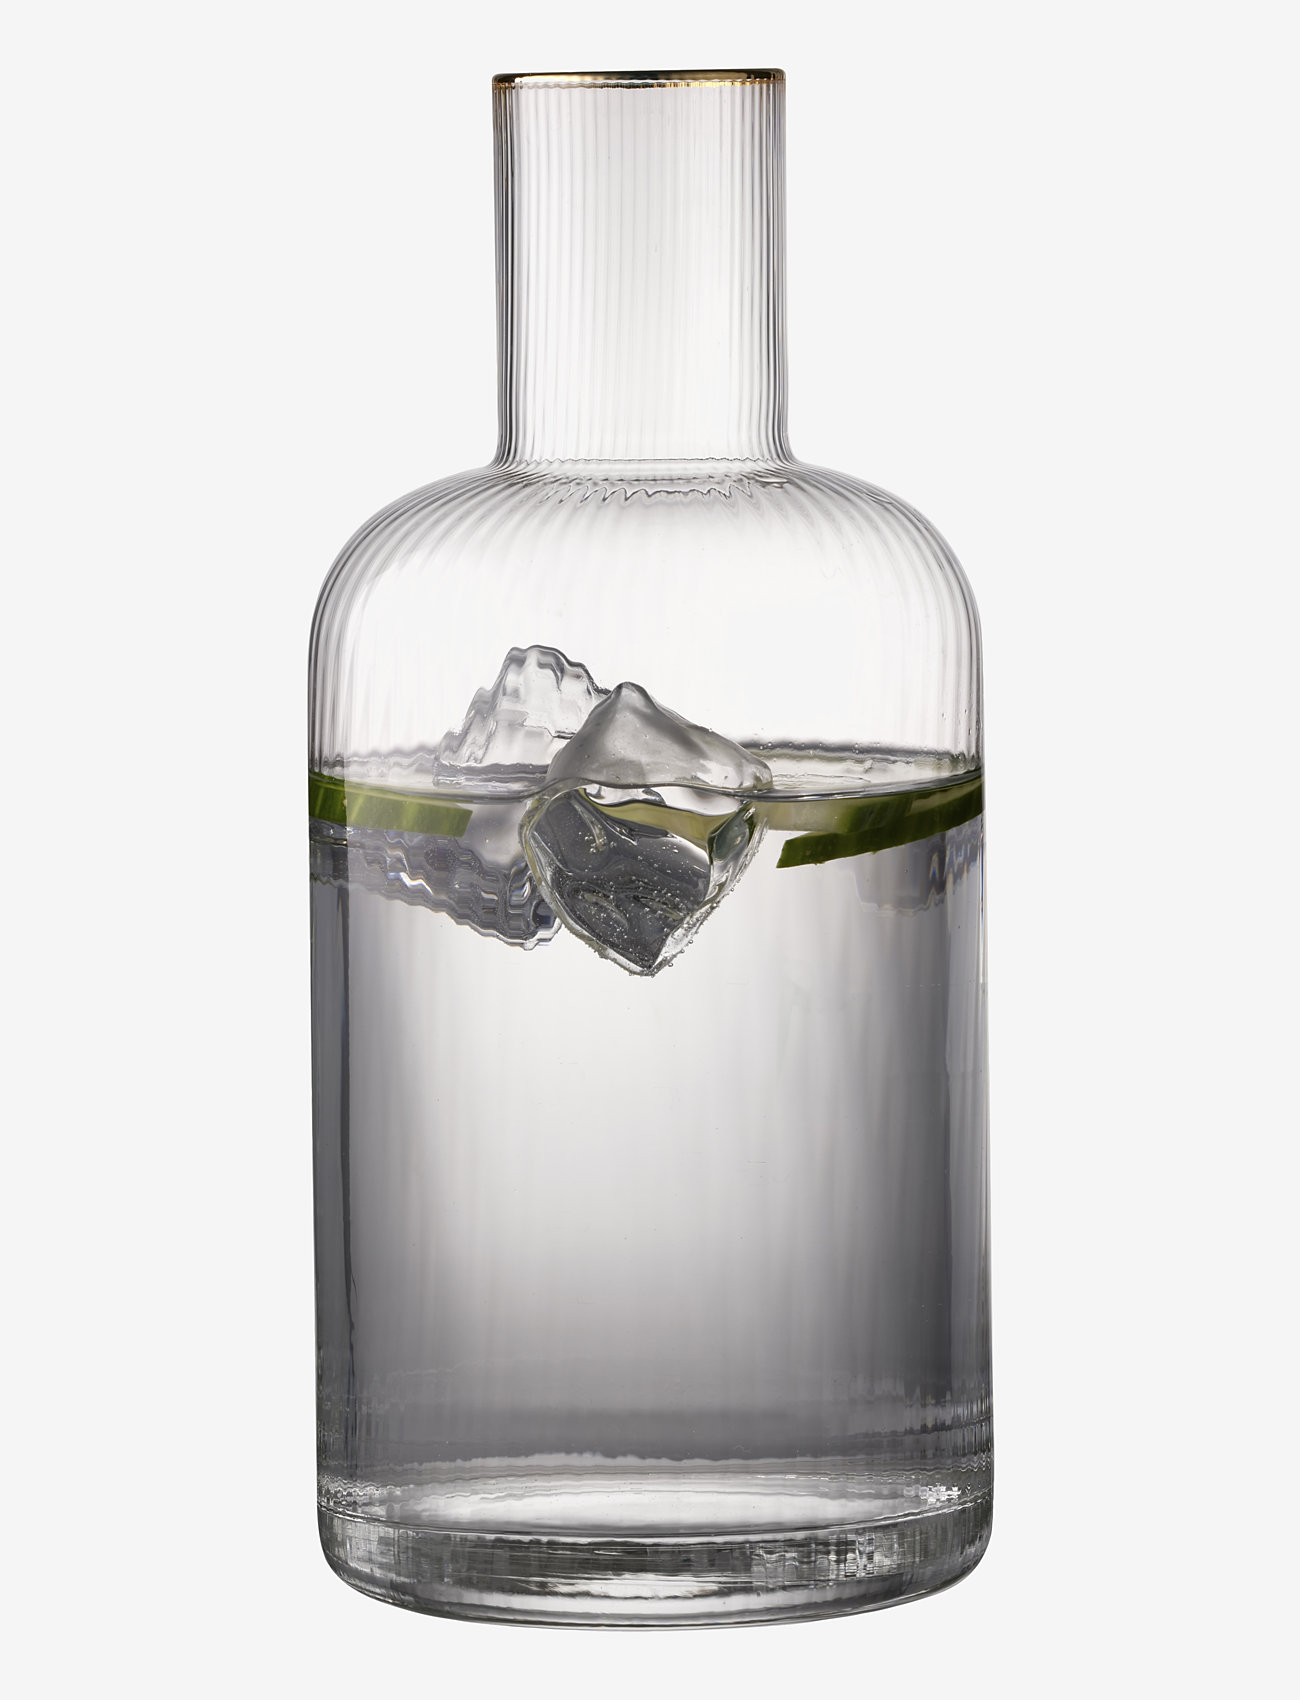 Lyngby Glas - Carafe Palermo Gold 1.5 liter - water jugs & carafes - transparen - 0